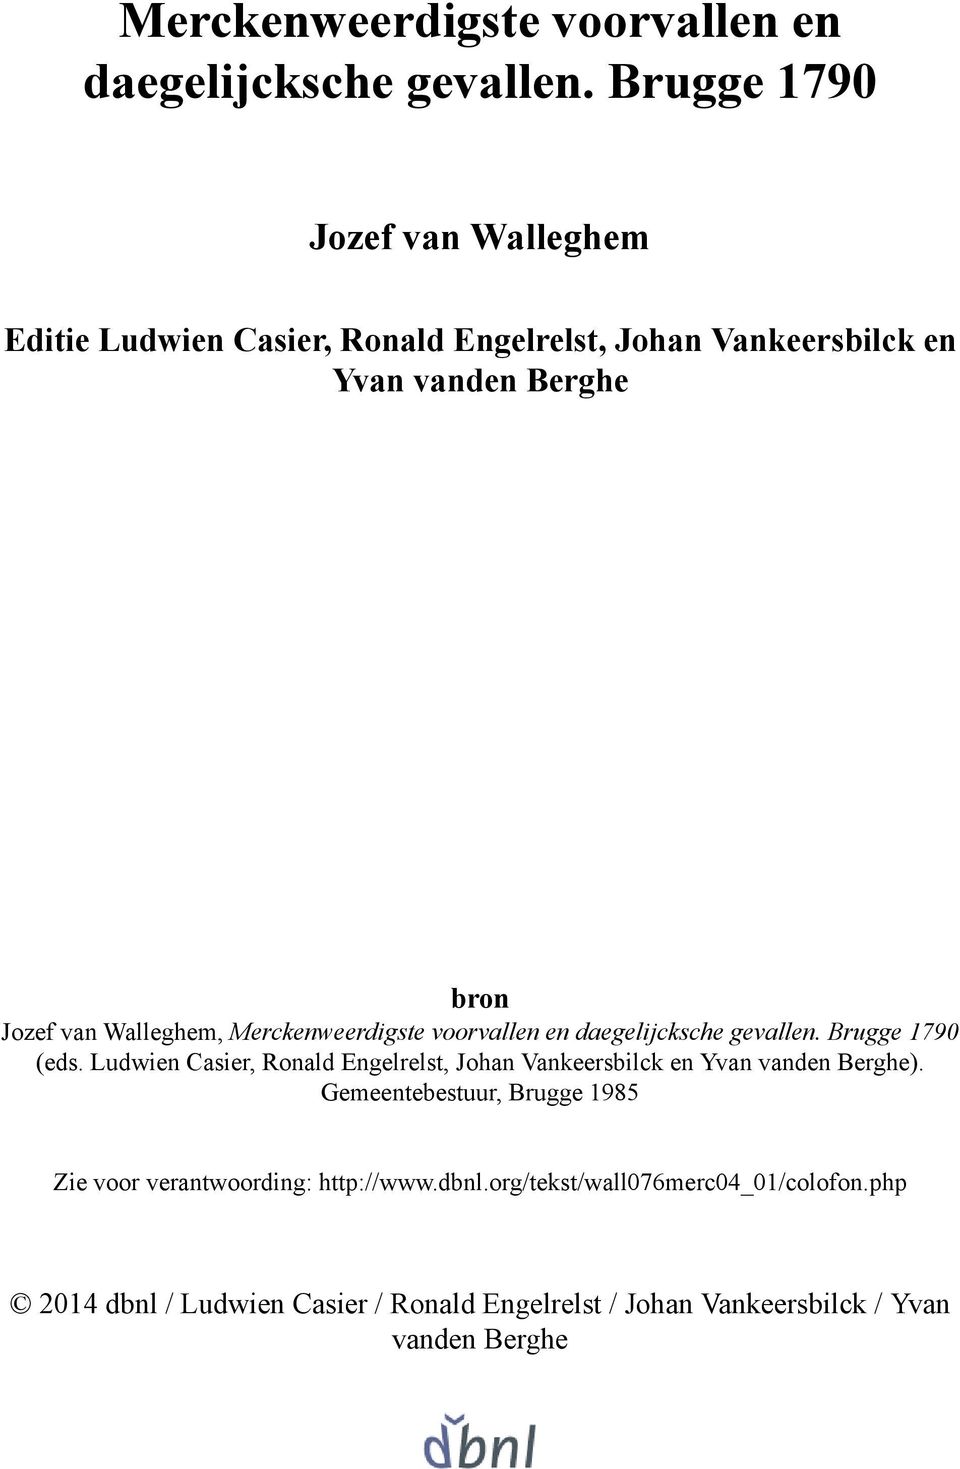 bron (eds. Ludwien Casier, Ronald Engelrelst, Johan Vankeersbilck en Yvan vanden Berghe).